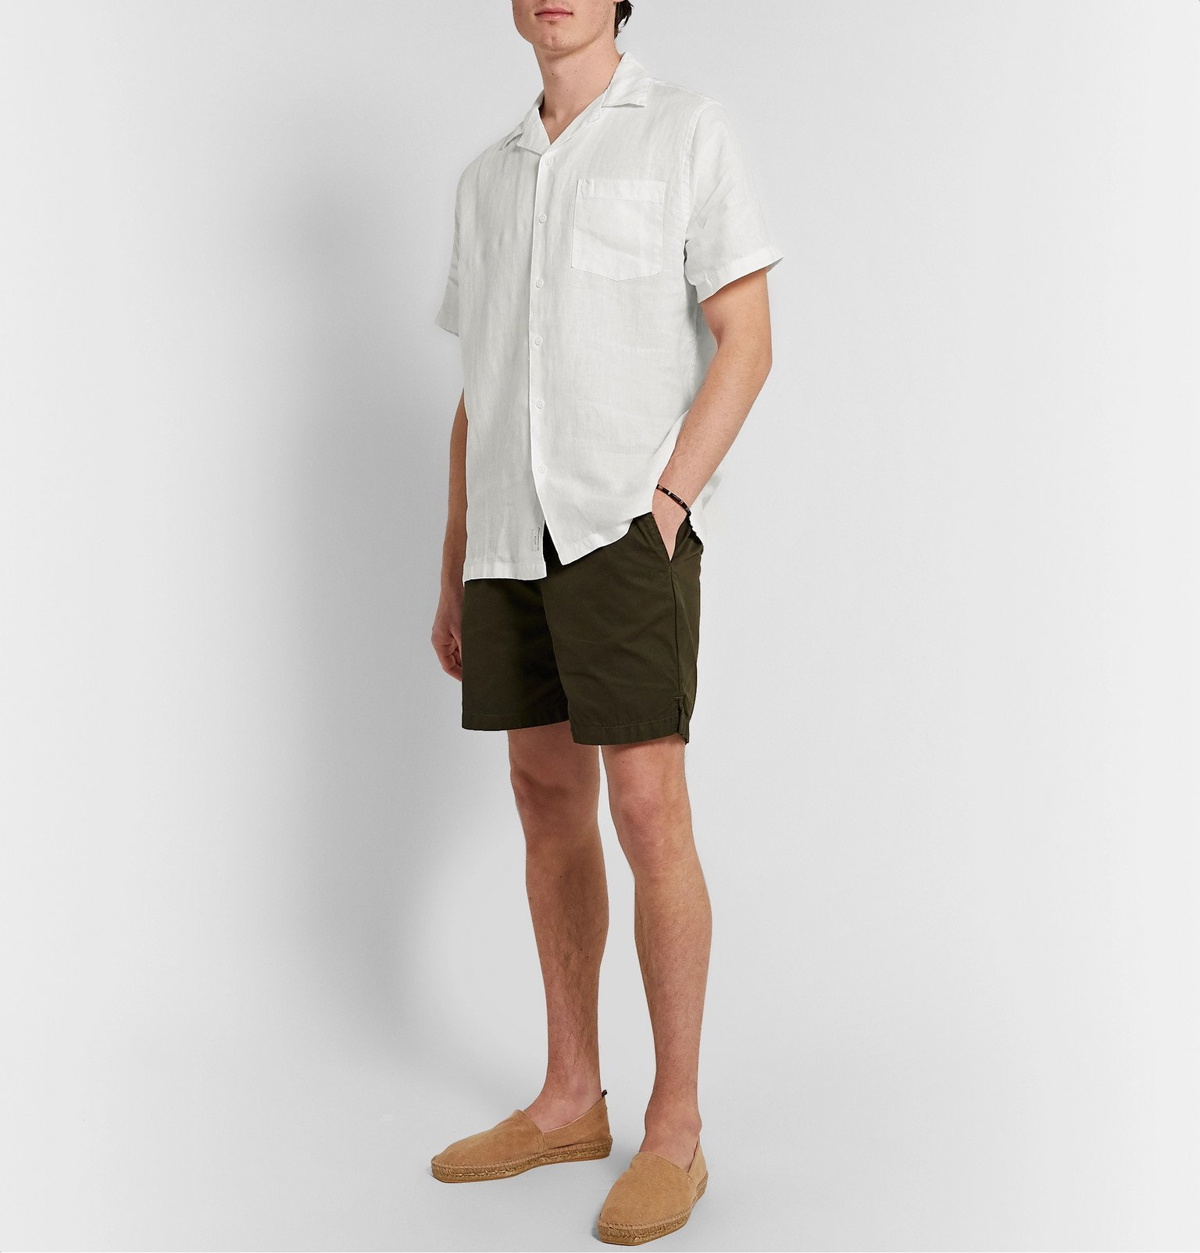 Onia - Vacation Camp-Collar Linen Shirt - Neutrals Onia